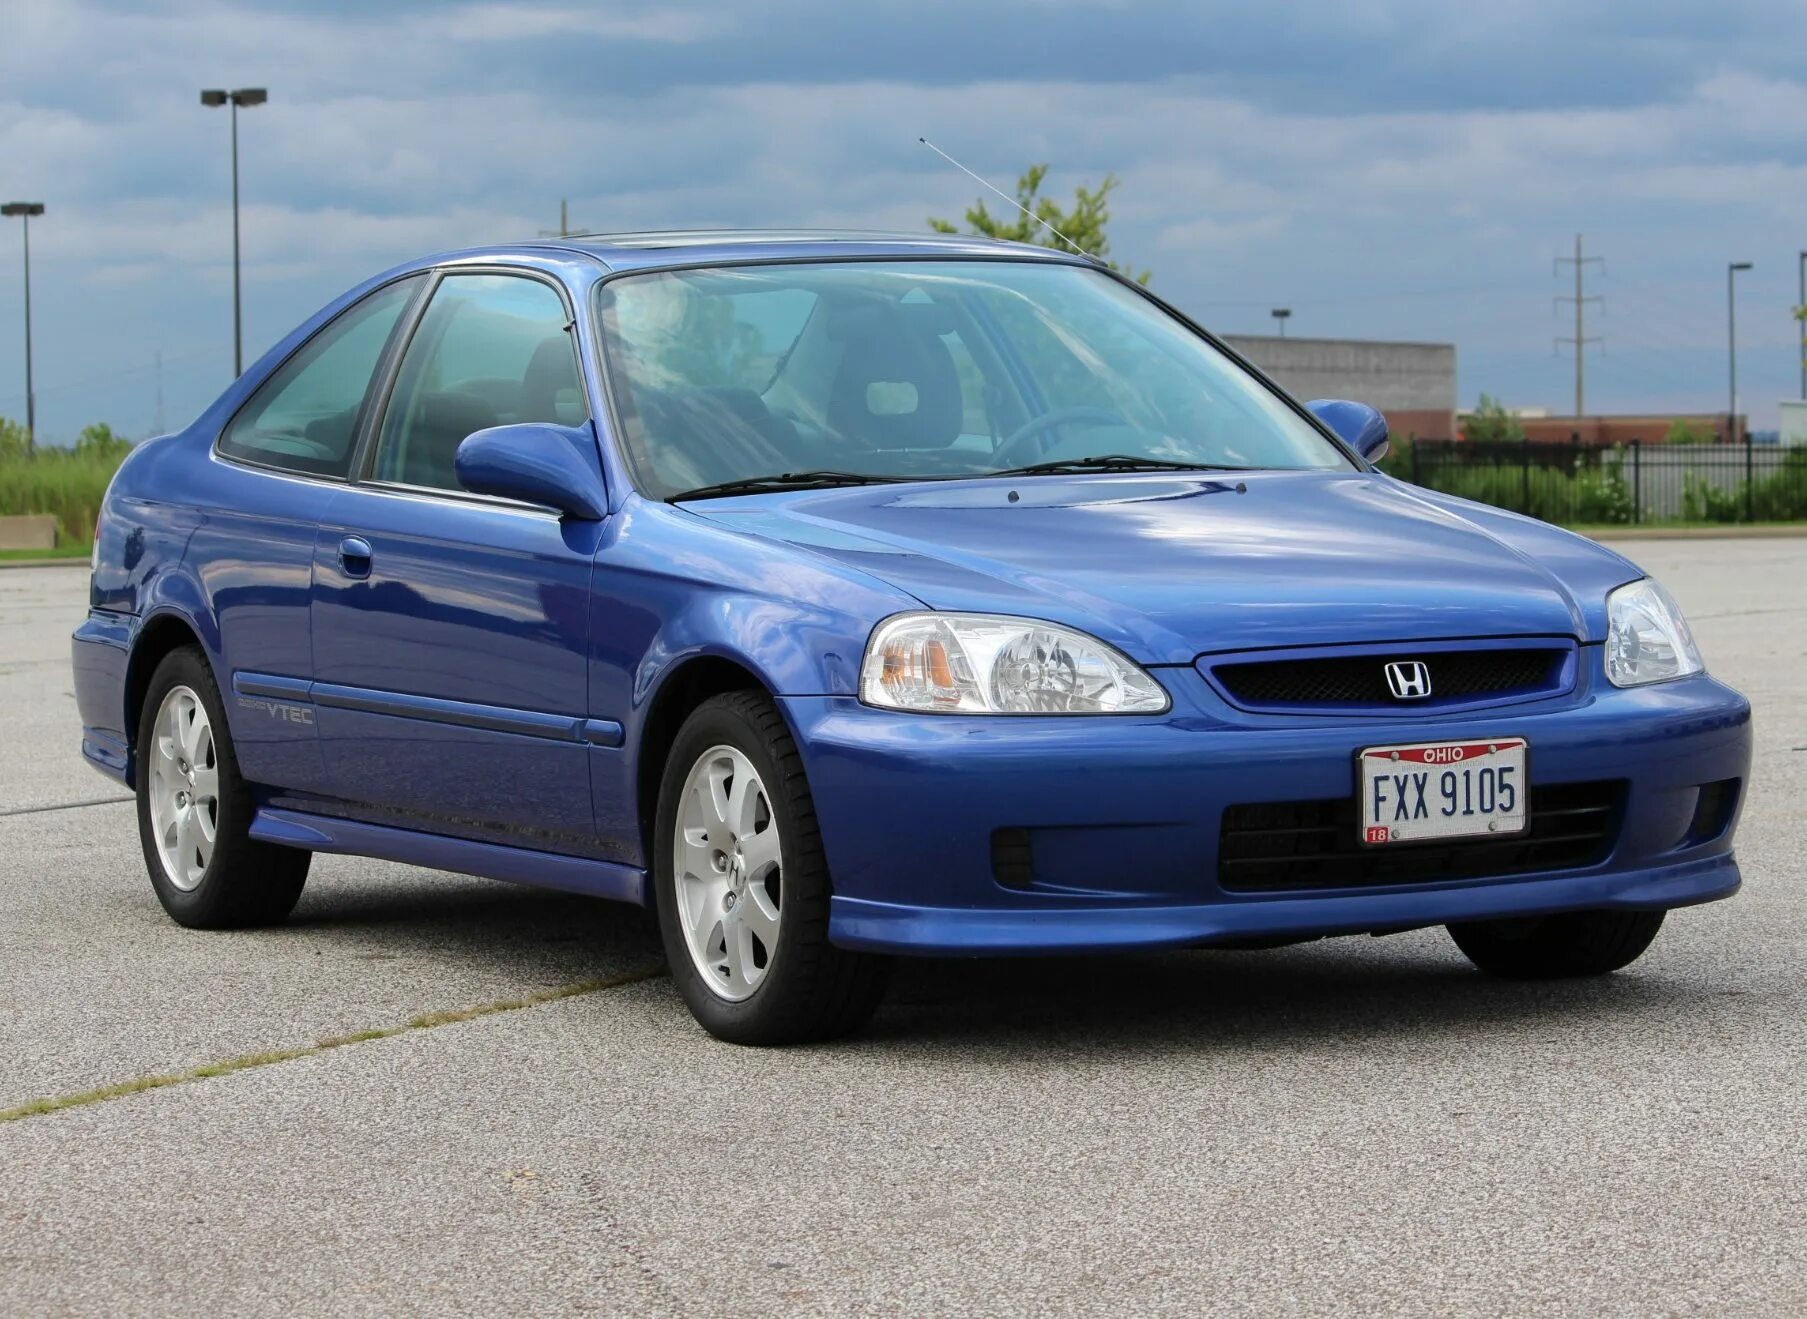 Honda civic 2000 года. Honda Civic 1999. Хонда Цивик седан 1999. Honda Civic 1999 седан. Honda Civic si 1999.